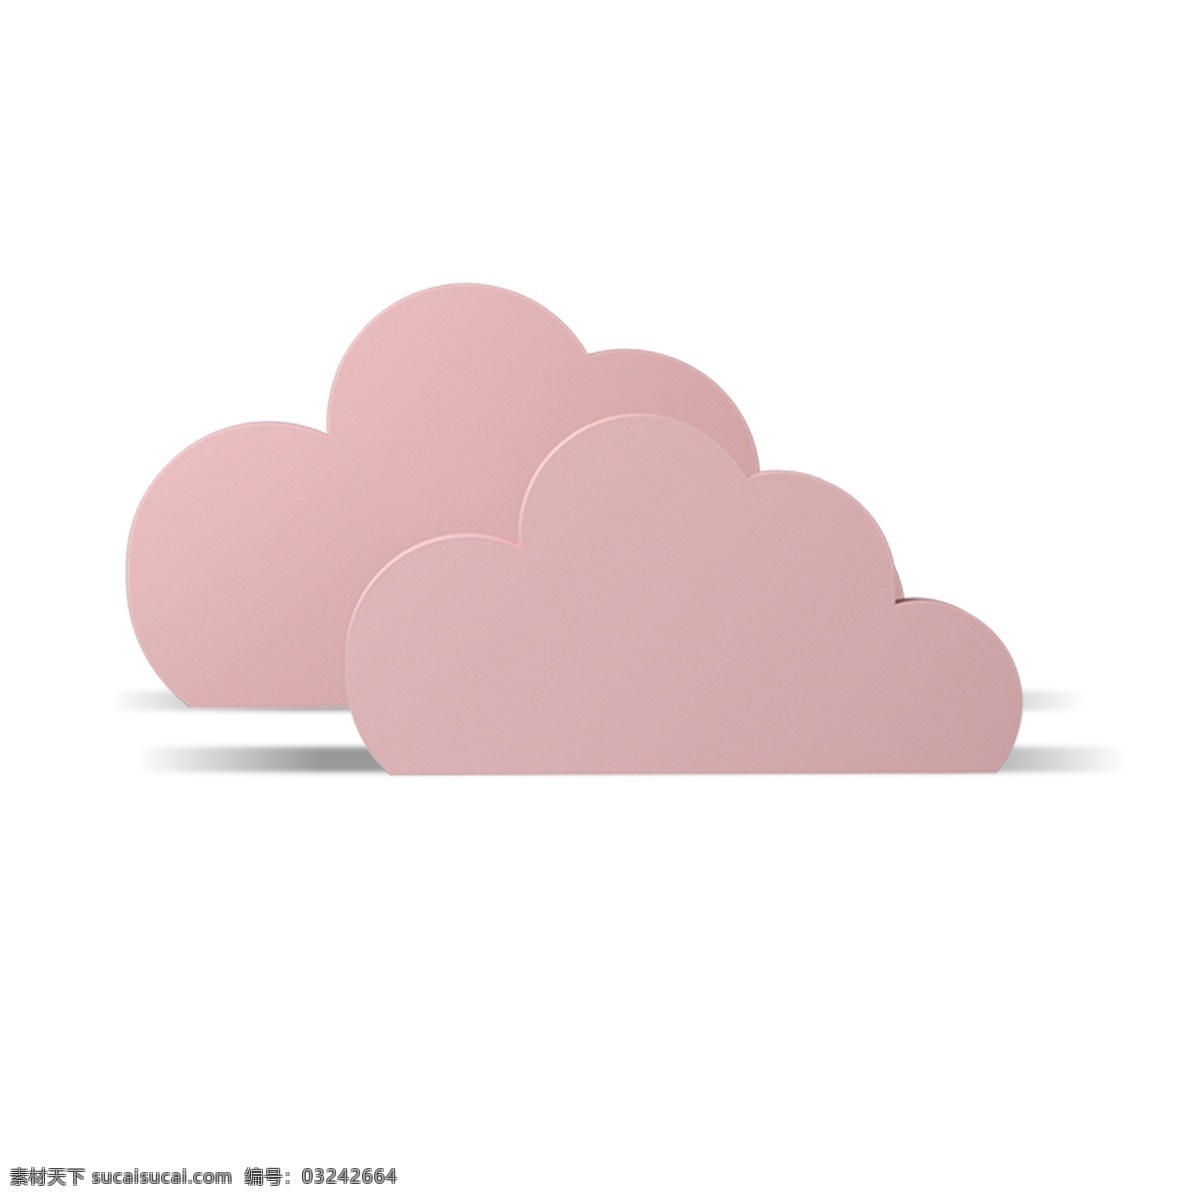 卡通 粉色 云朵 卡通云朵 粉色云朵 天空云朵 云朵装饰 卡通插图 创意卡通下载 插图 png图下载